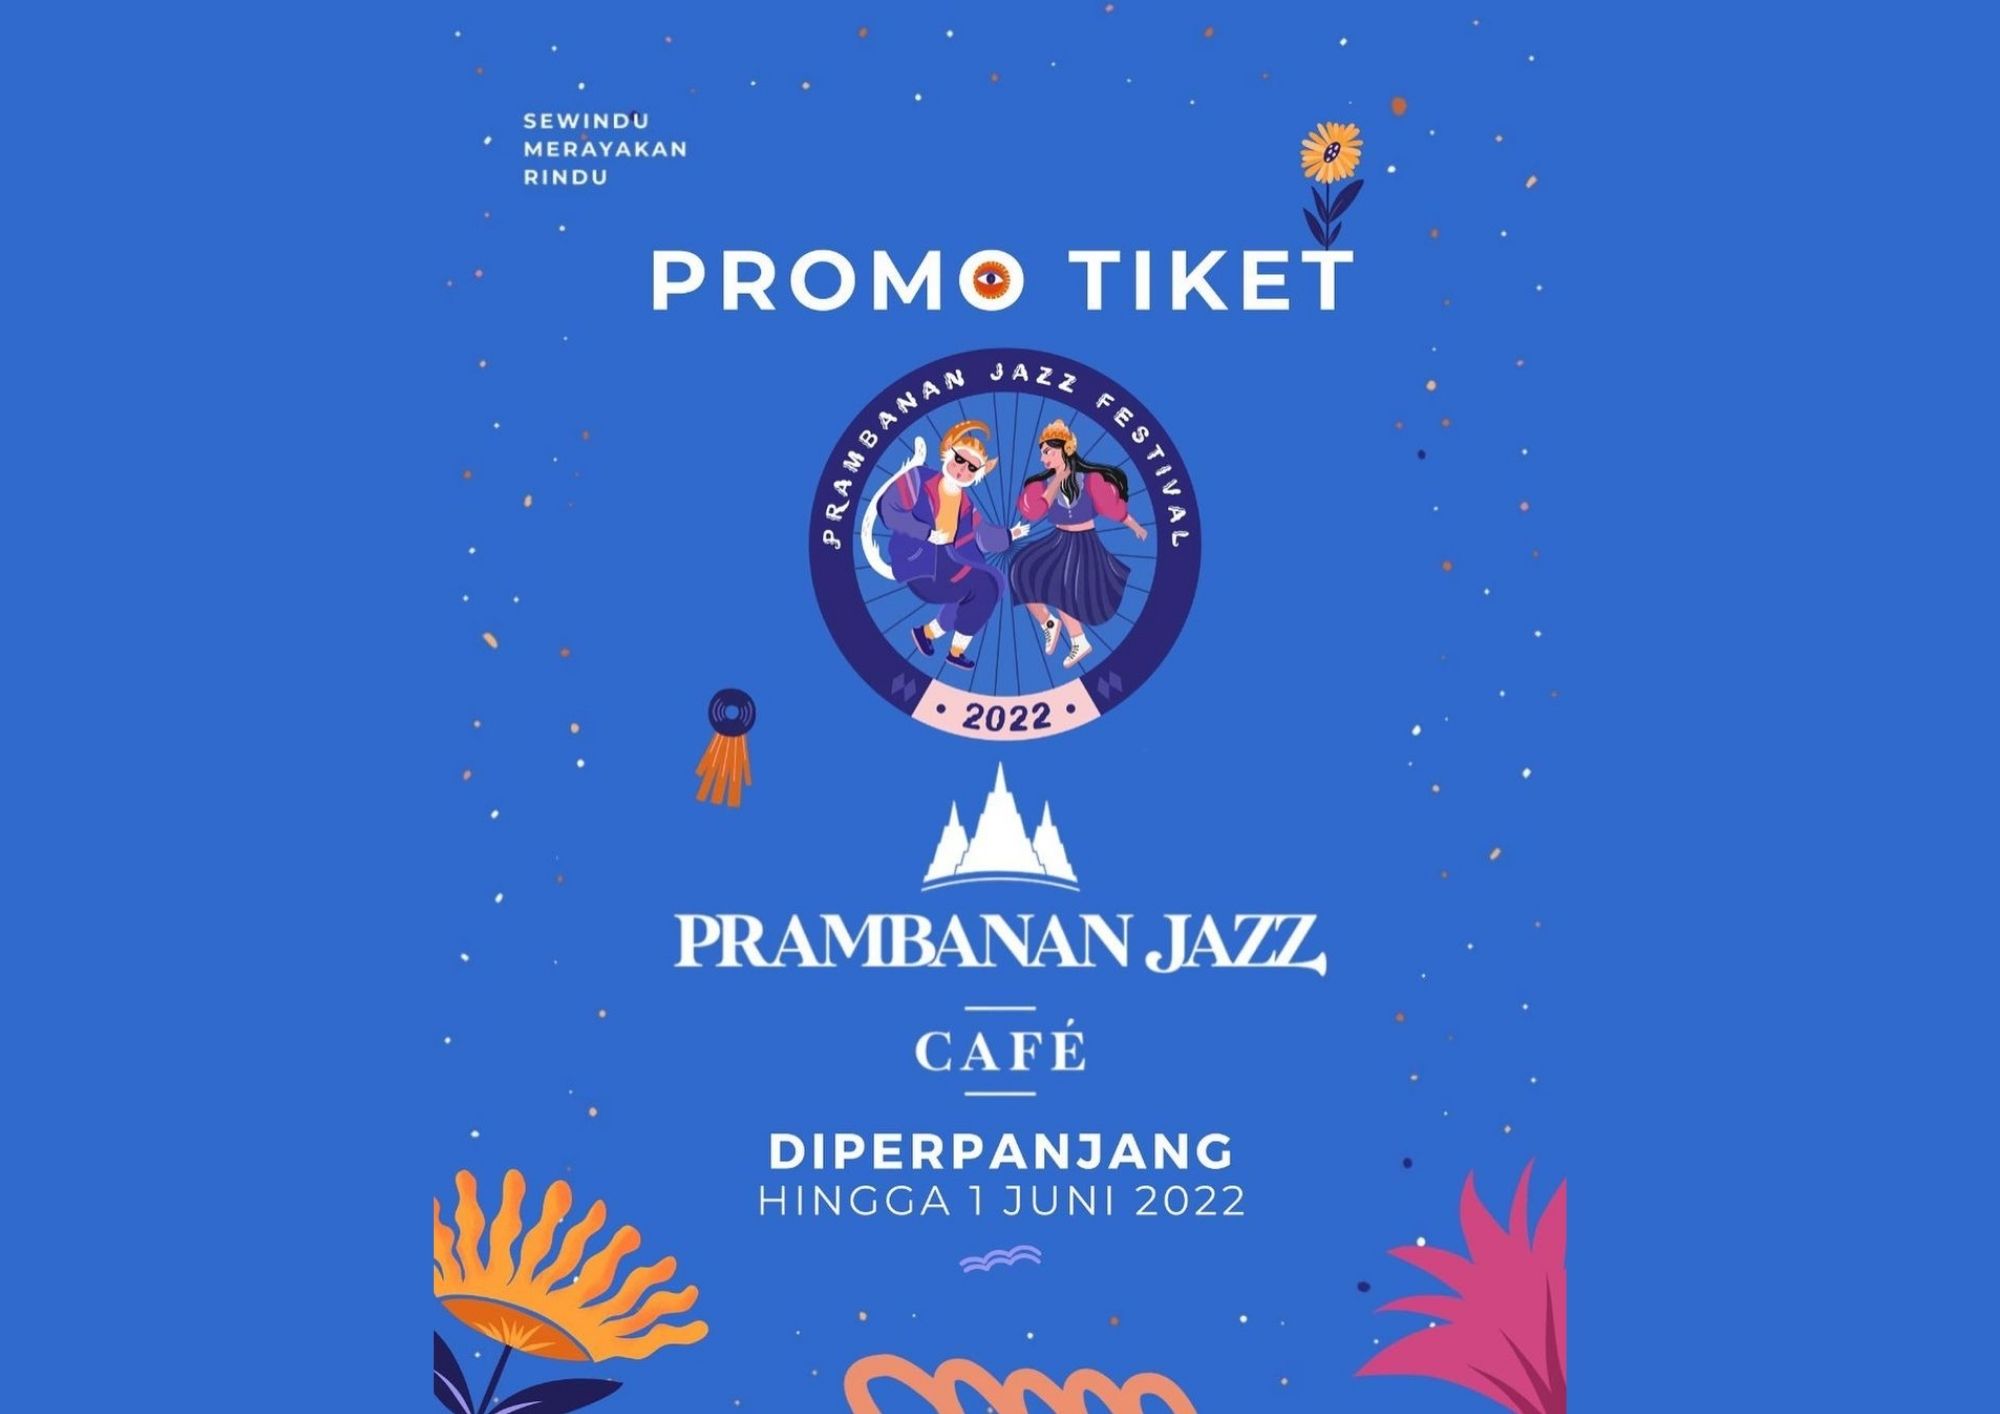 Promo Tiket Prambanan Jazz Cafe Diperpanjang